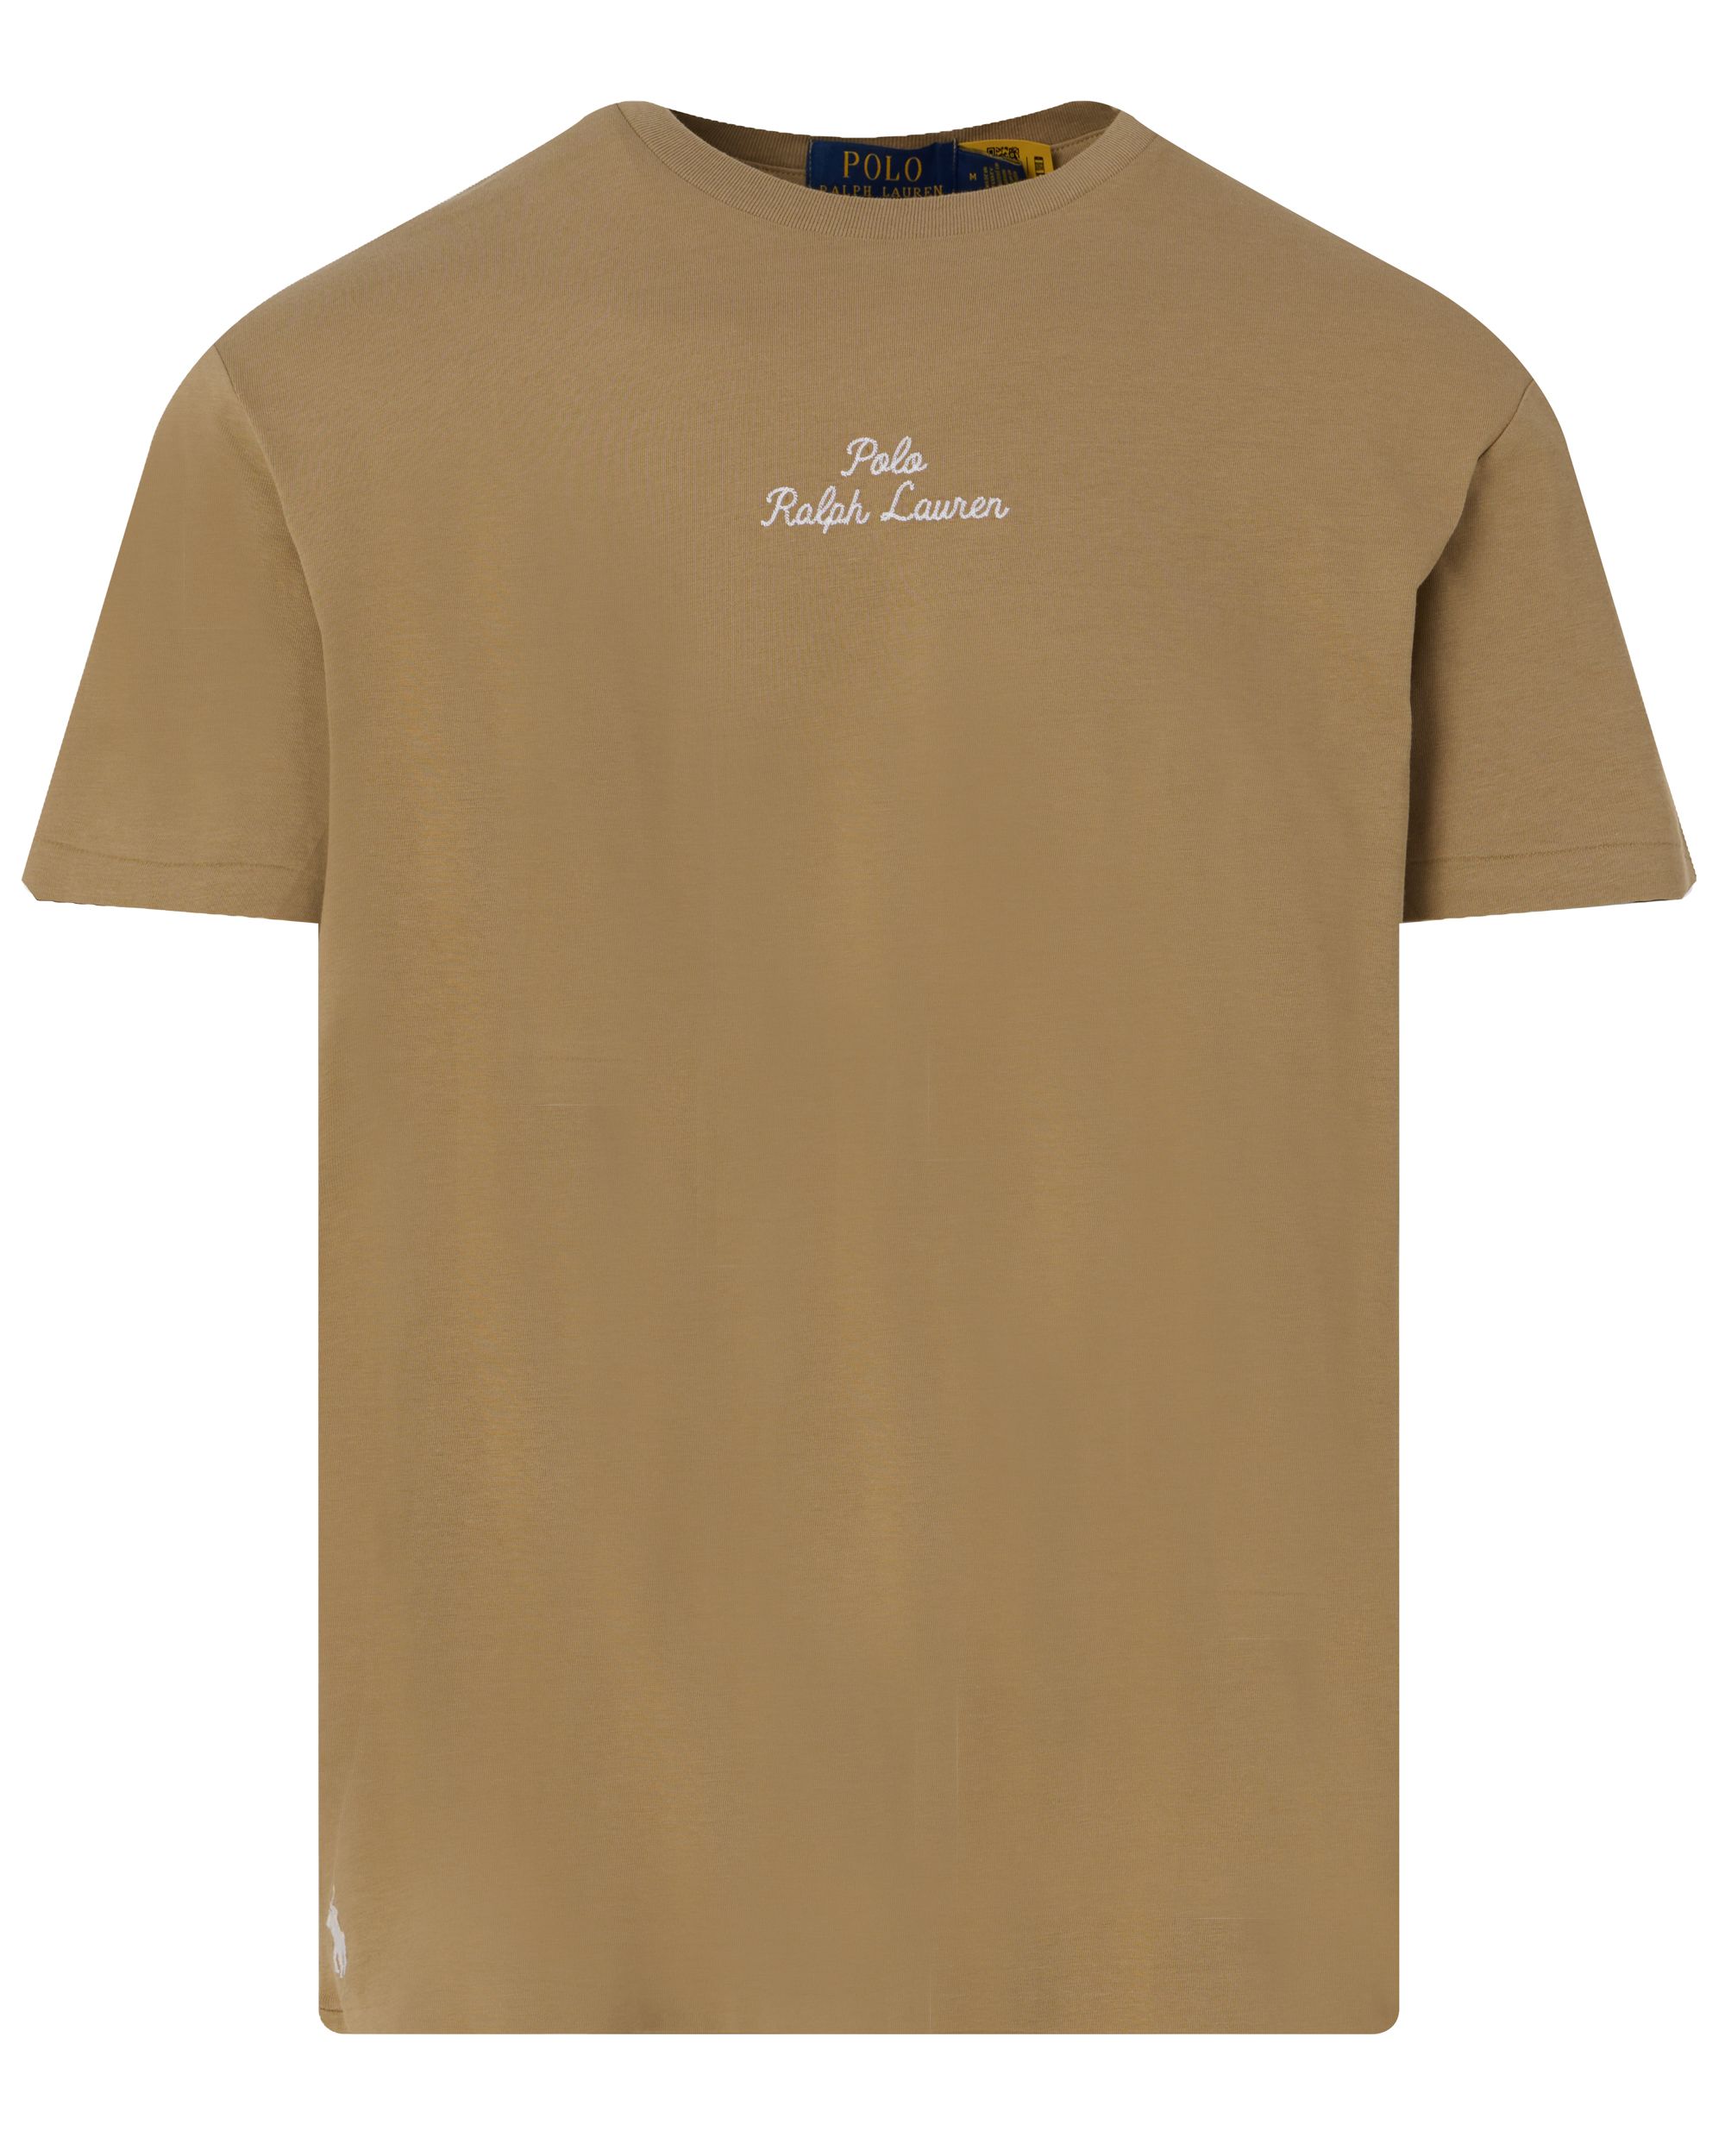 Polo Ralph Lauren T-shirt KM Beige 095301-001-L